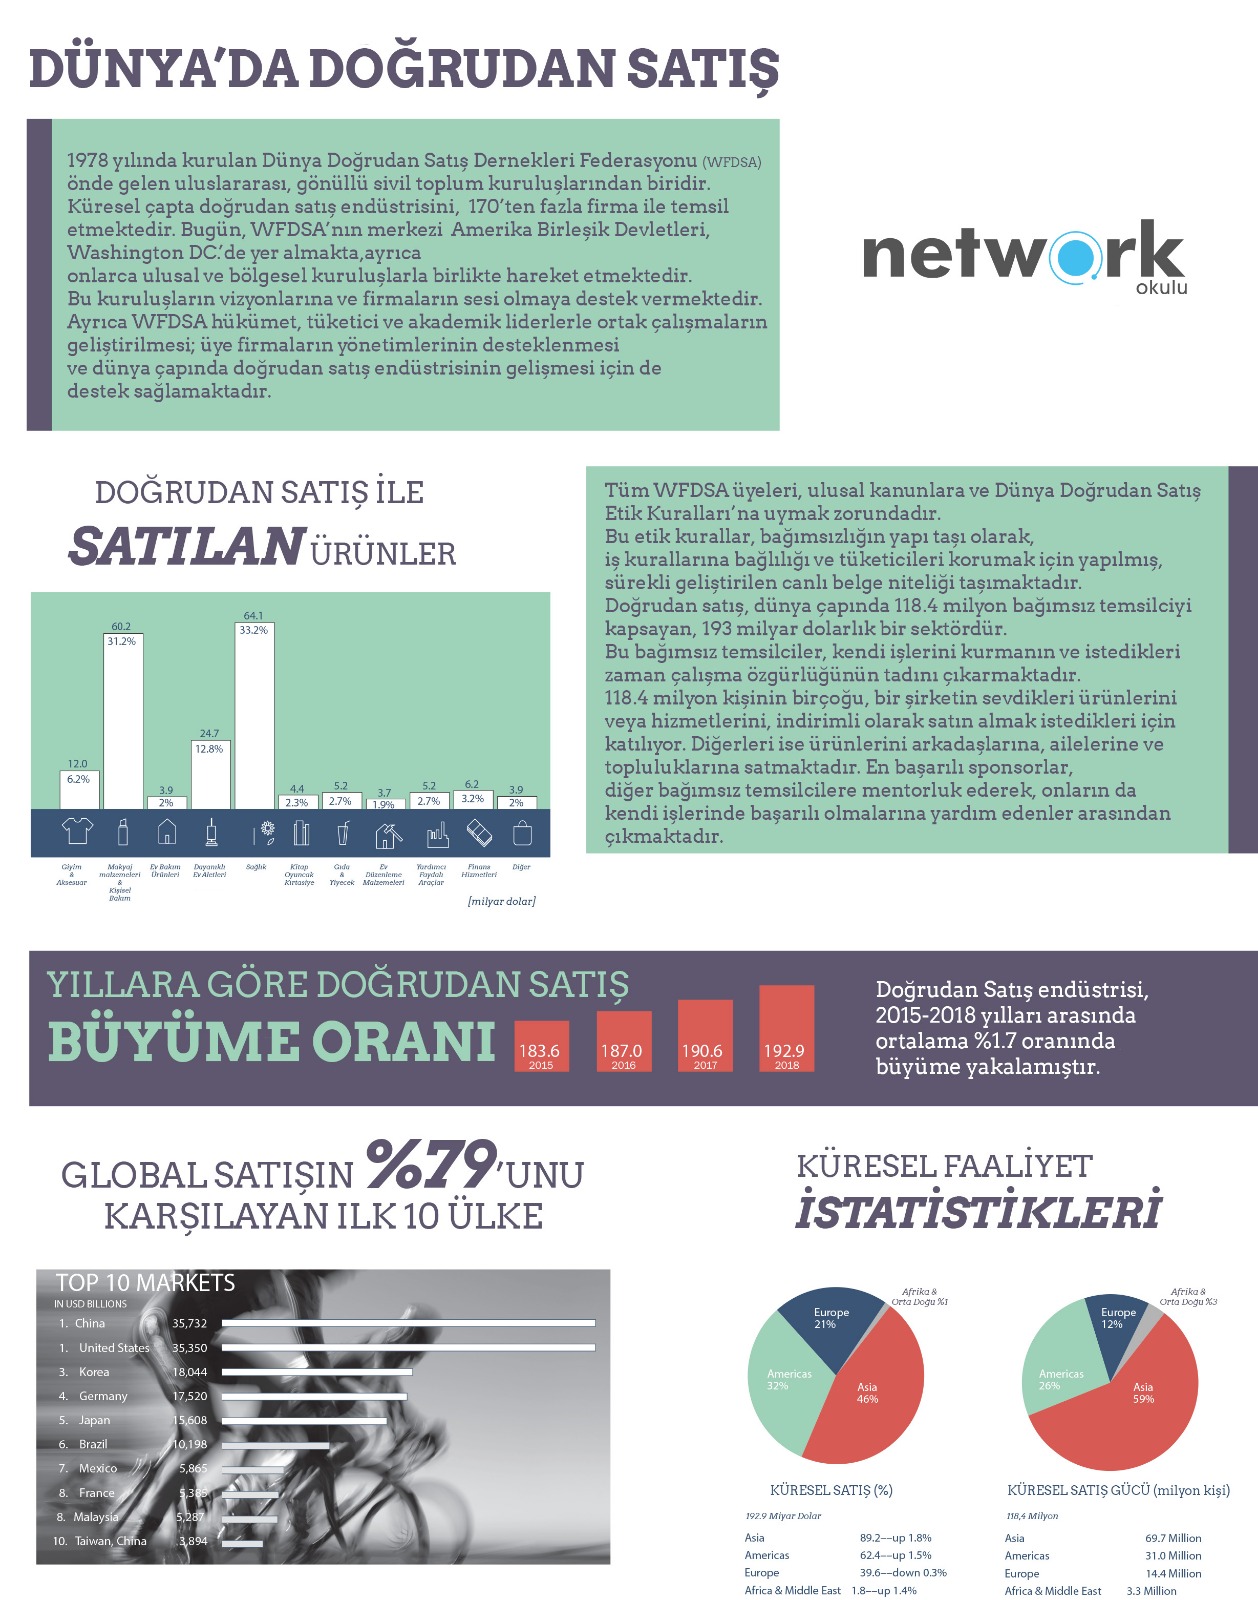 Network Okulu - Dünya Doğrudan Satış İstatistikleri 2018 verileri 